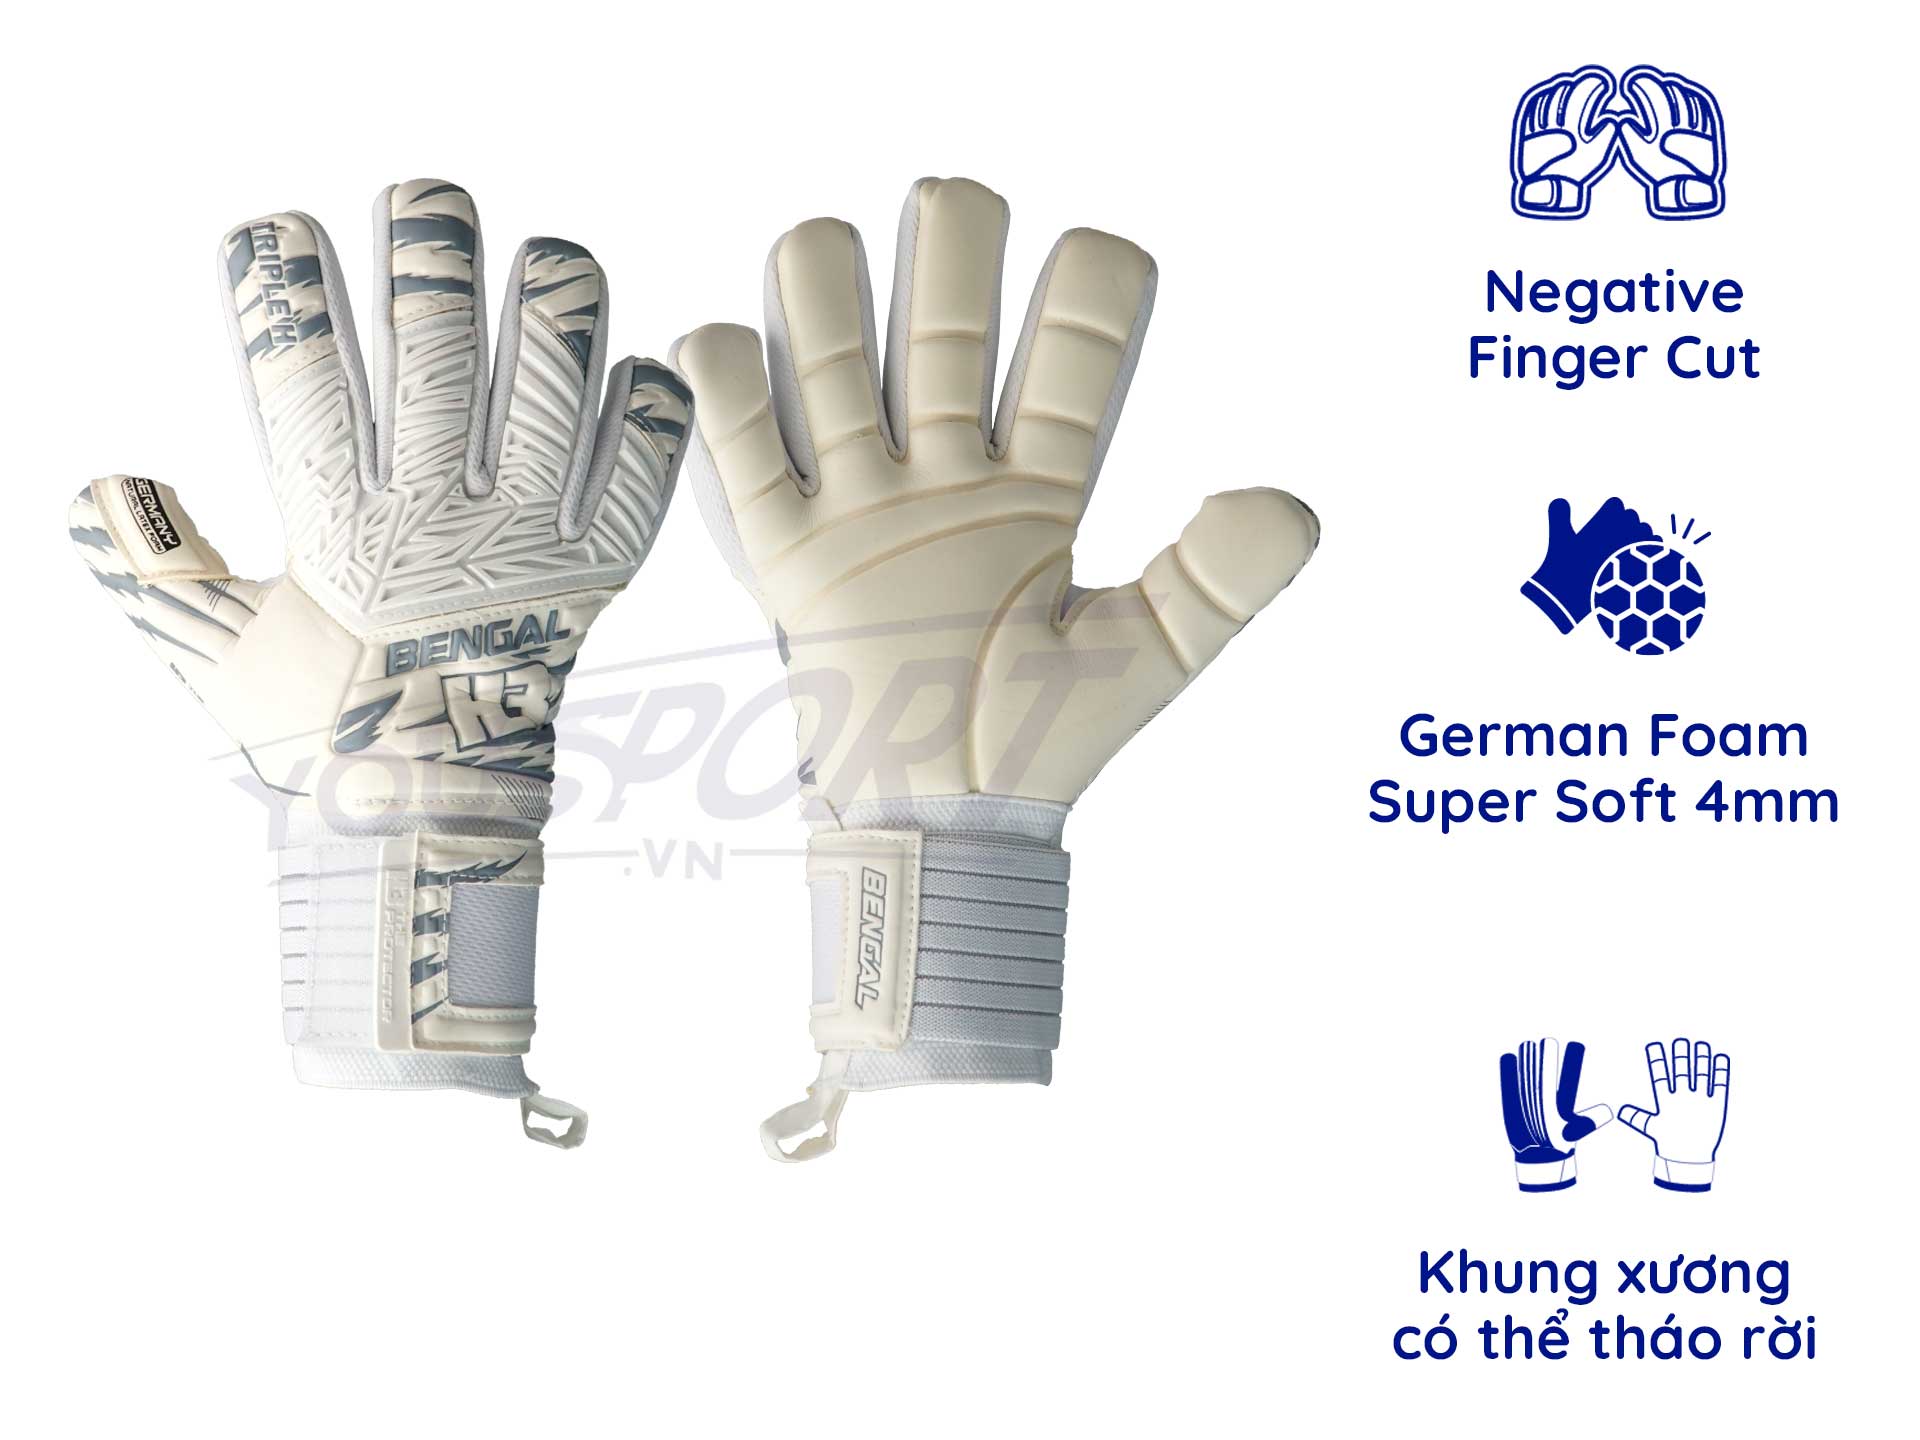 H3 Bengal là gì và công nghệ ép mút giúp tăng độ chắc tay trong găng tay thủ môn?